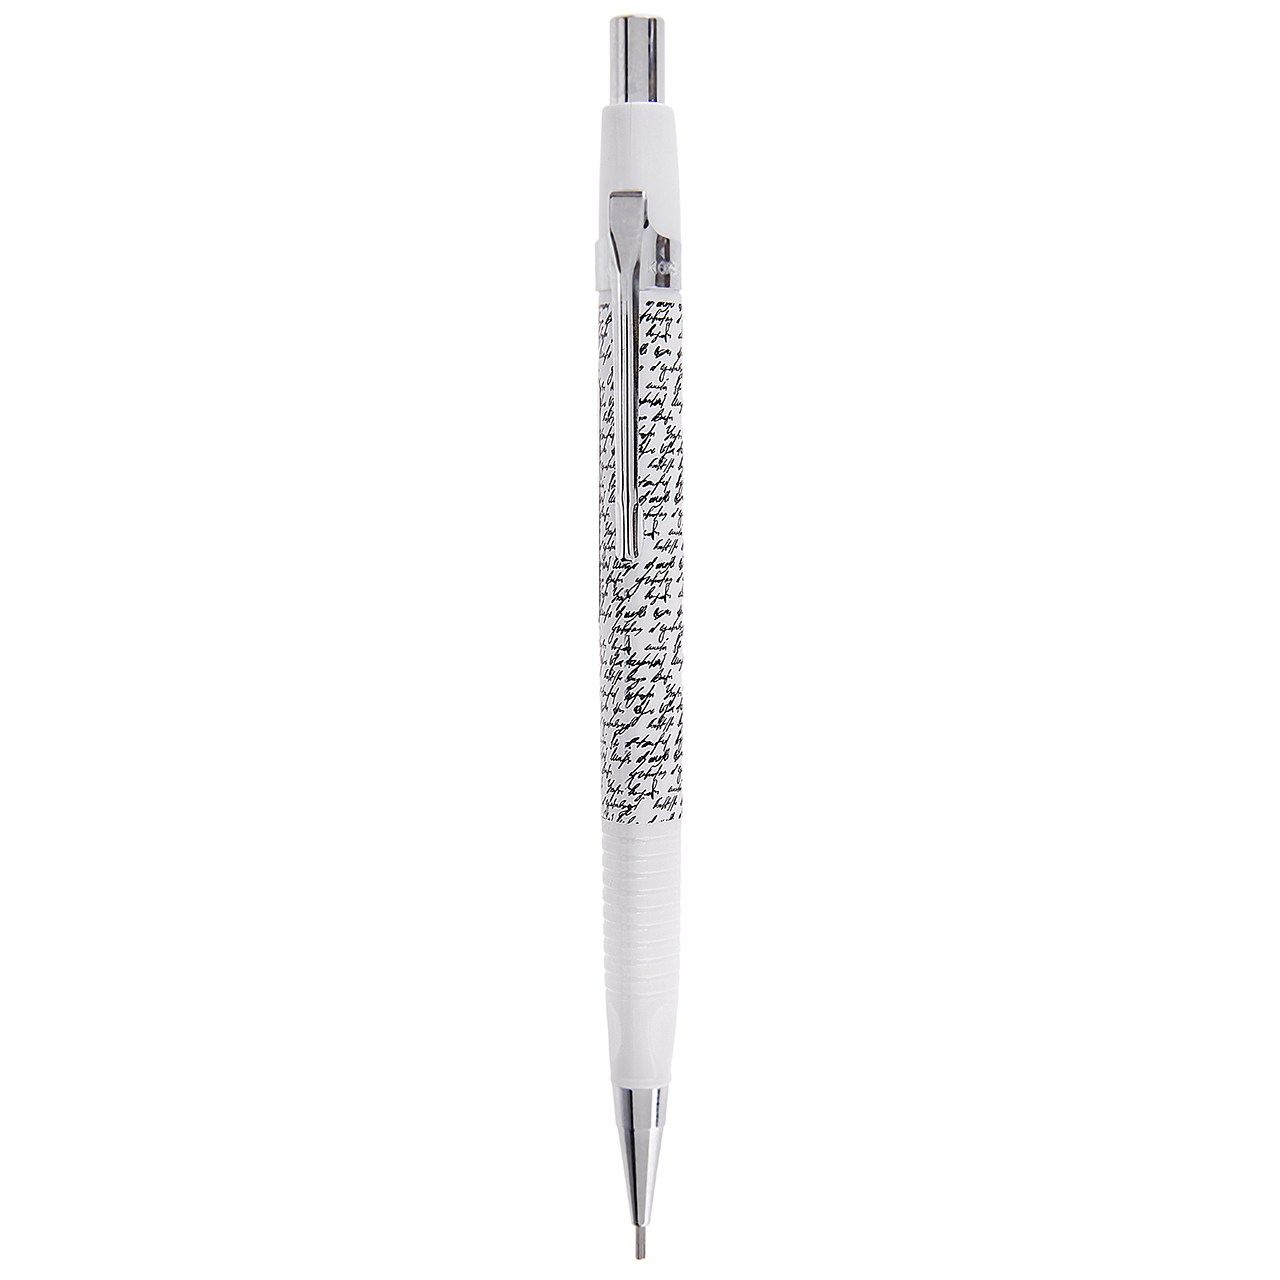 مداد نوکی اونر مدل  مونوگرام - کد 11967 طرح 9 با قطر نوشتاری 0.7 میلی متر